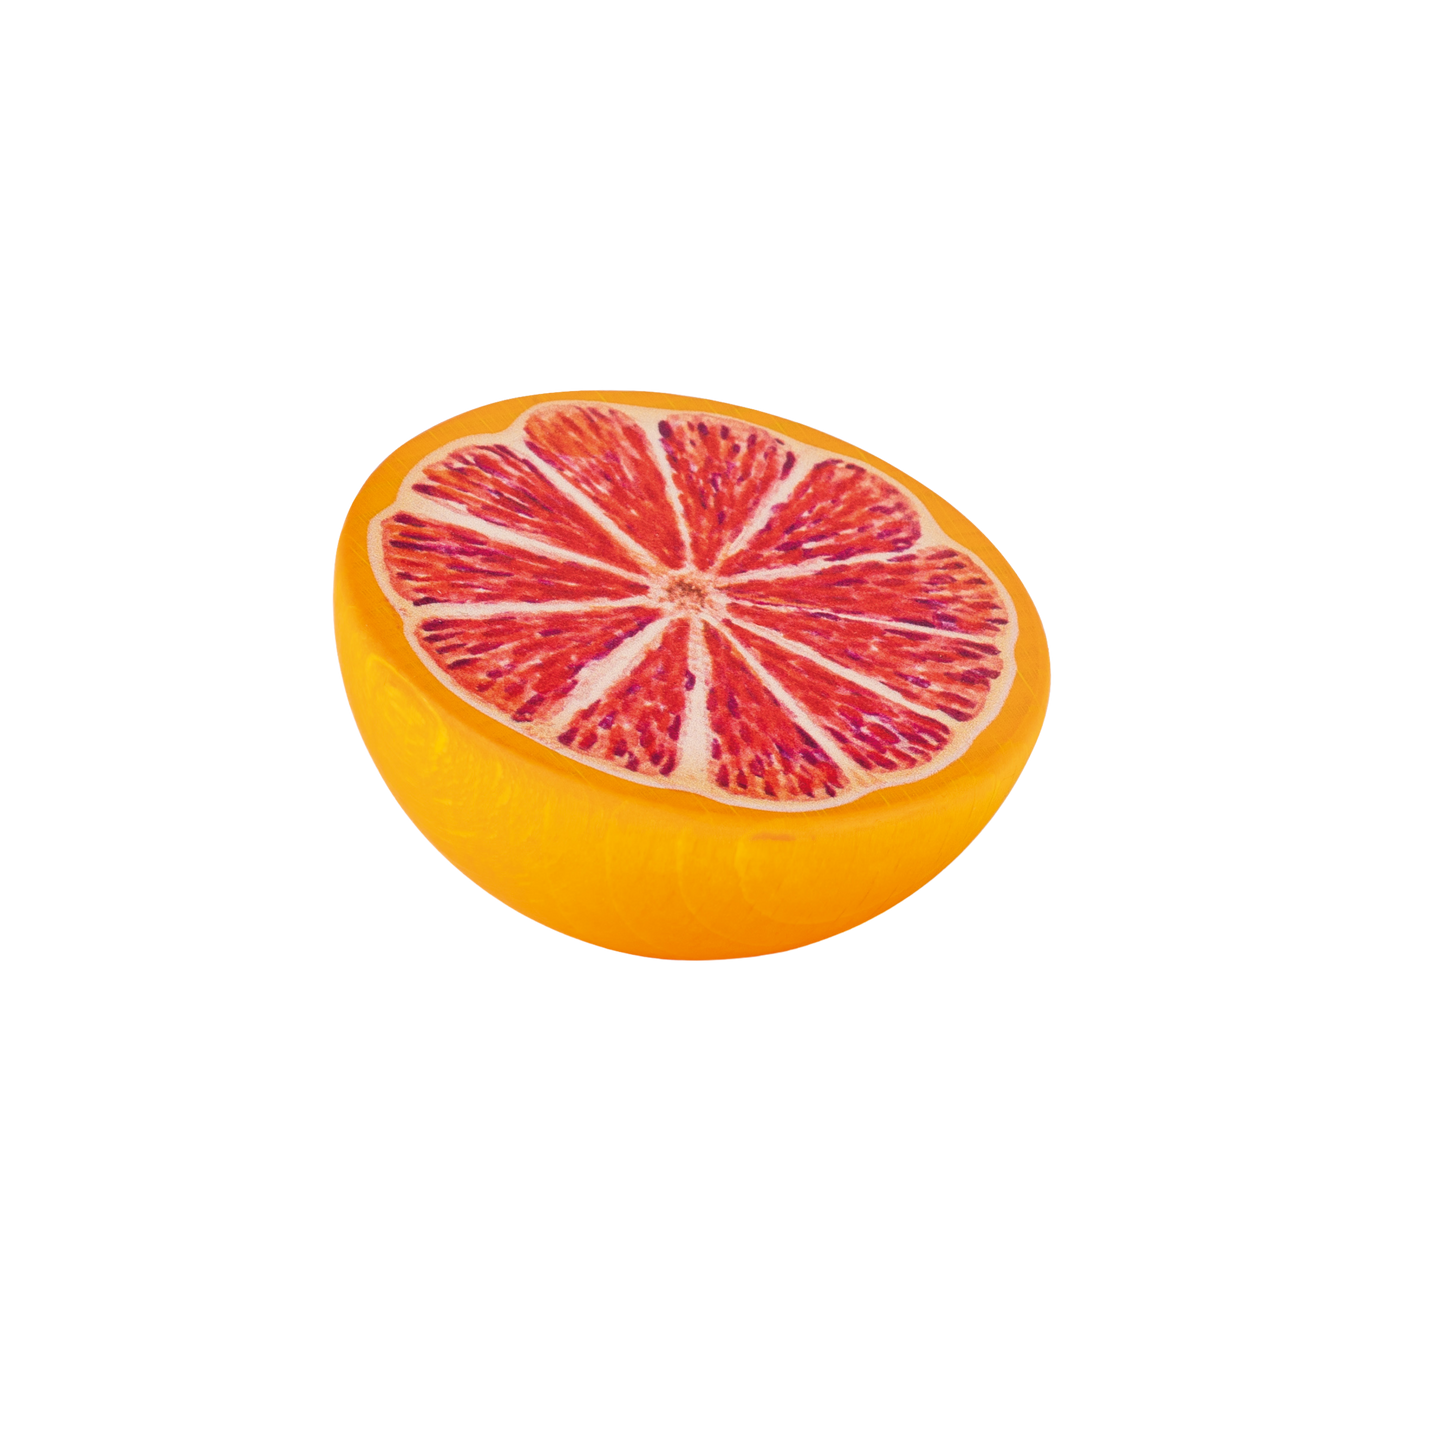 kaufladenzubehoer grapefruit aus holz mit aufgemalten fruchtfleisch